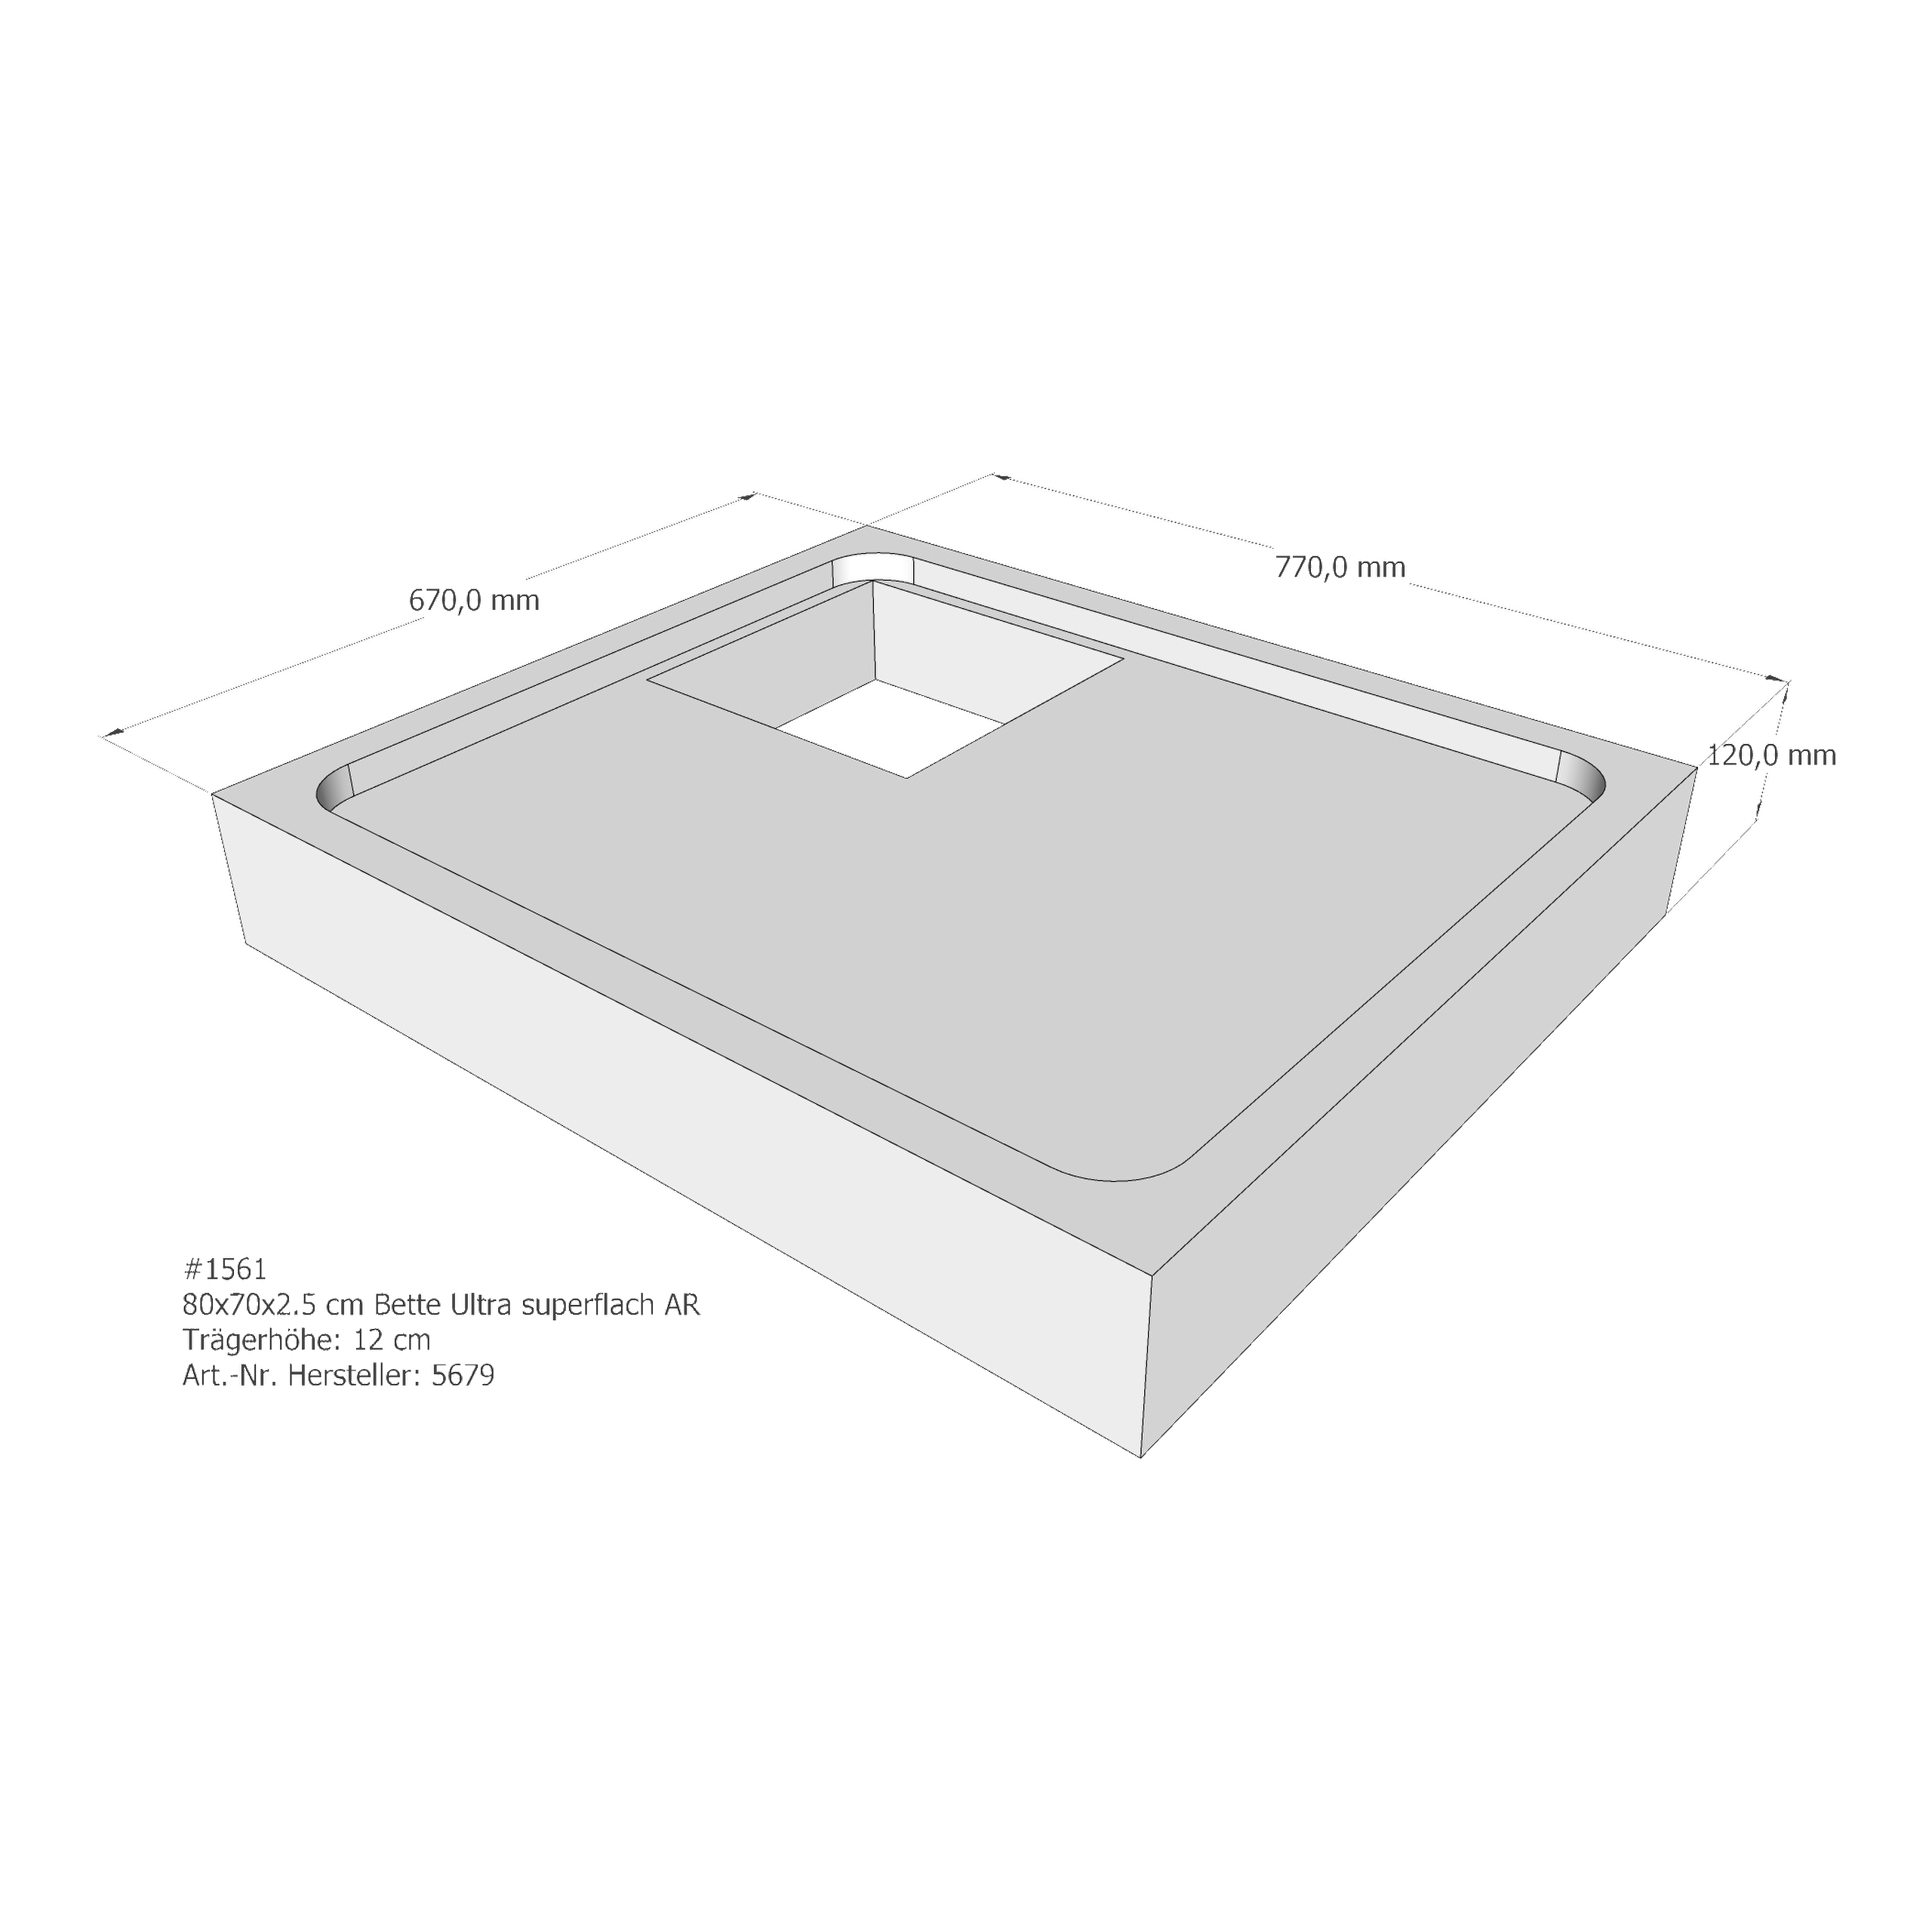 Duschwannenträger Bette BetteUltra (superflach) 80x70x2,5 cm AR210